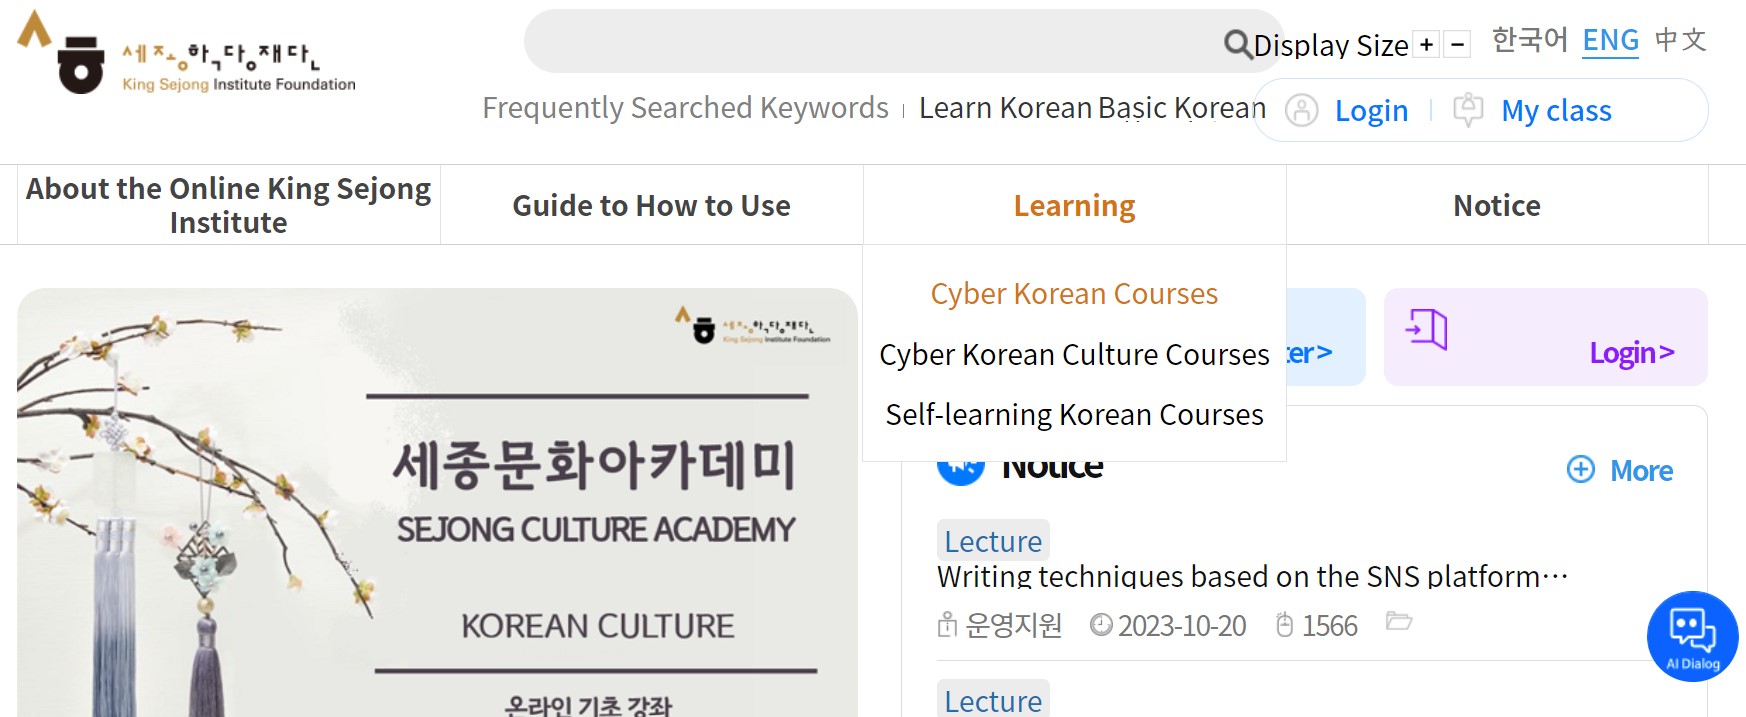 Kursus Online Bahasa Korea Gratis di Situs Web "King Sejong Institute"